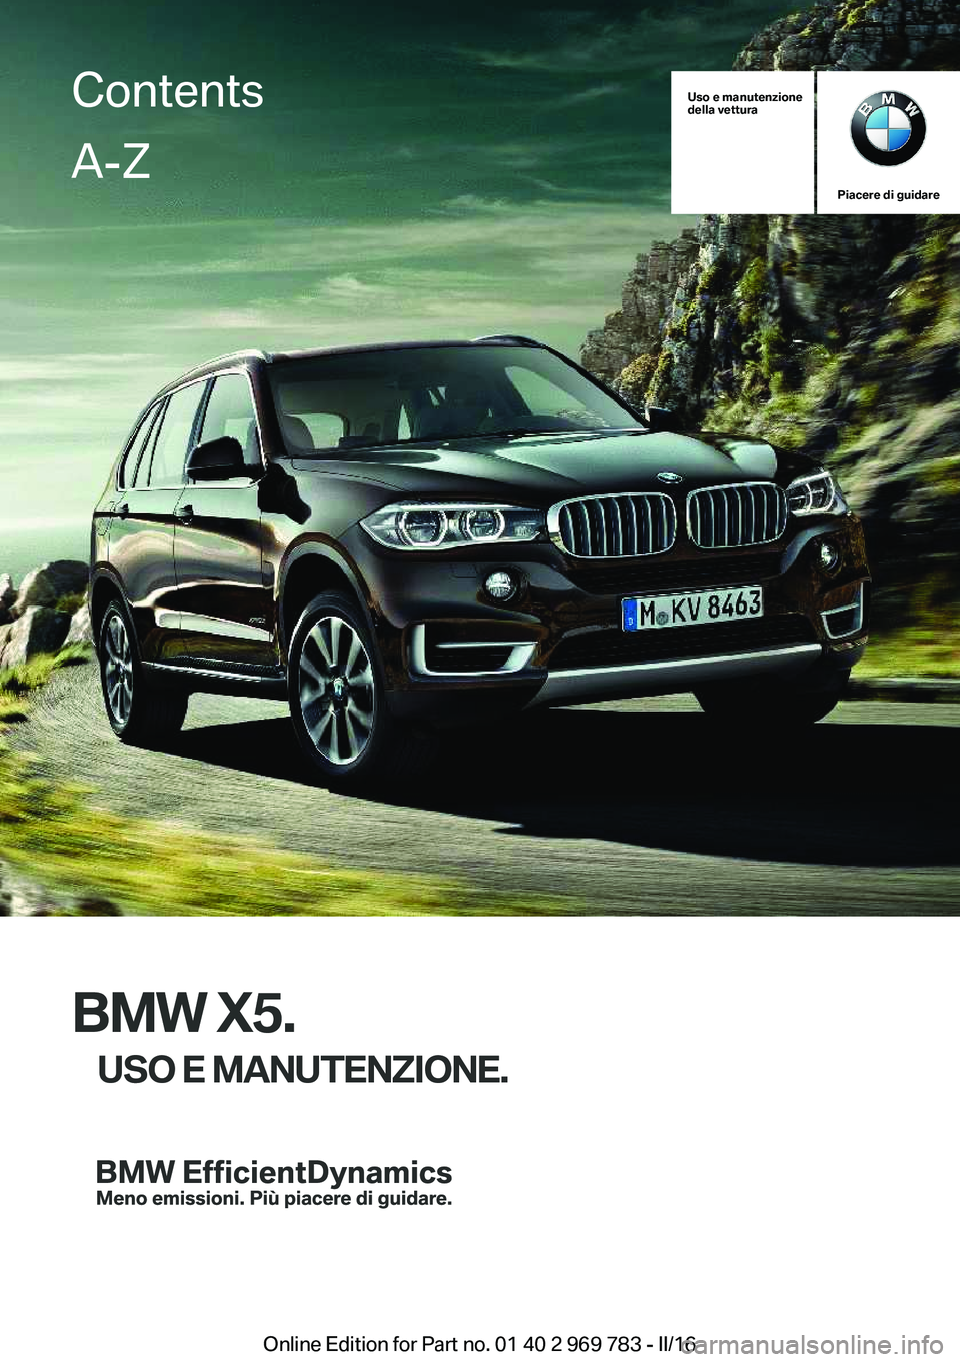 BMW X5 2016  Libretti Di Uso E manutenzione (in Italian) Uso e manutenzione
della vettura
Piacere di guidare
BMW X5.
USO E MANUTENZIONE.
ContentsA-Z
Online Edition for Part no. 01 40 2 969 783 - II/16   